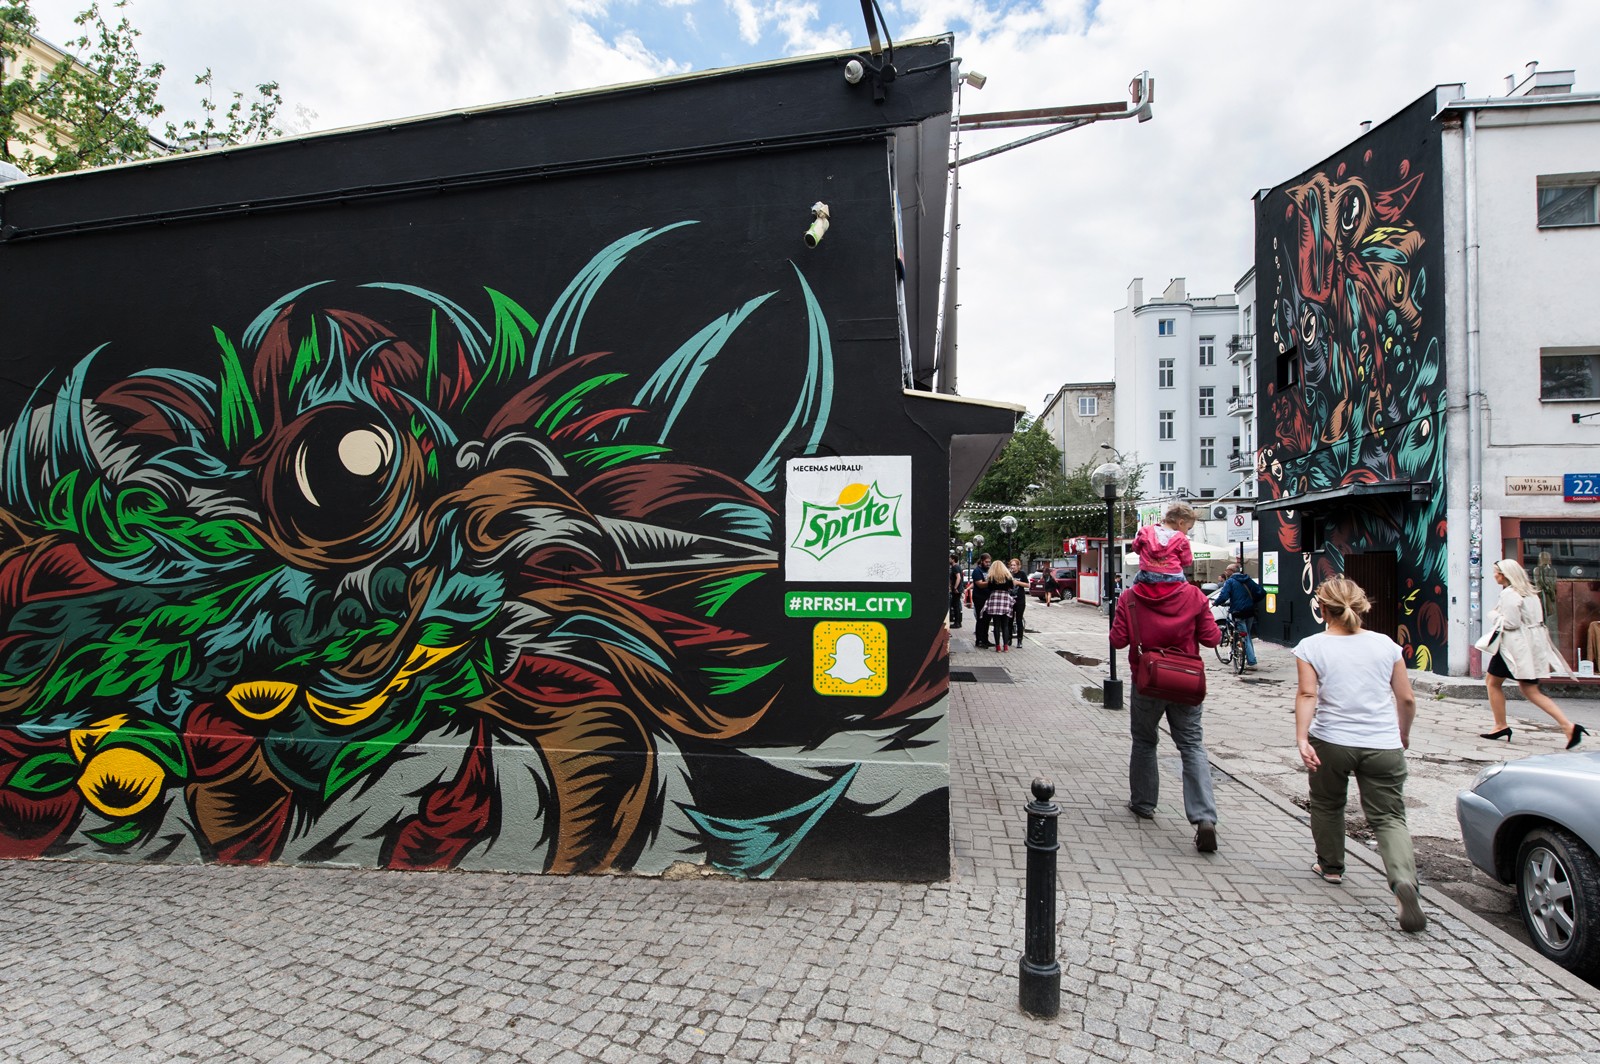 Mural reklamowy projektu Swanski dla Sprite na warszawskich pawilonach przy ulicy Nowy Świat 22 | #RFRSH_CITY | Portfolio